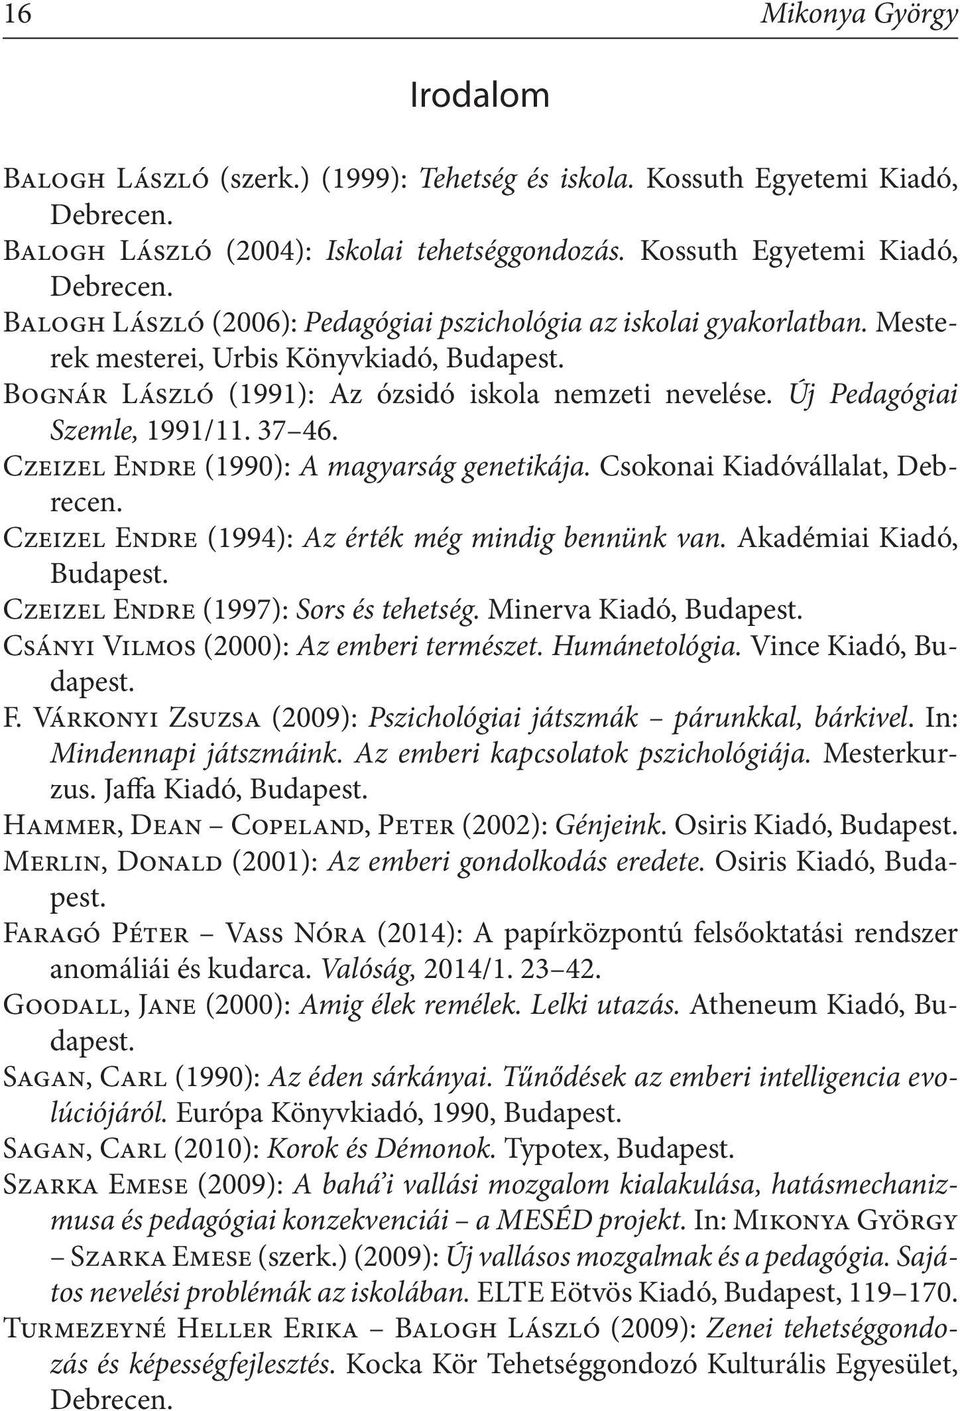 Csokonai Kiadóvállalat, Debrecen. Czeizel Endre (1994): Az érték még mindig bennünk van. Akadémiai Kiadó, Budapest. Czeizel Endre (1997): Sors és tehetség. Minerva Kiadó, Budapest.